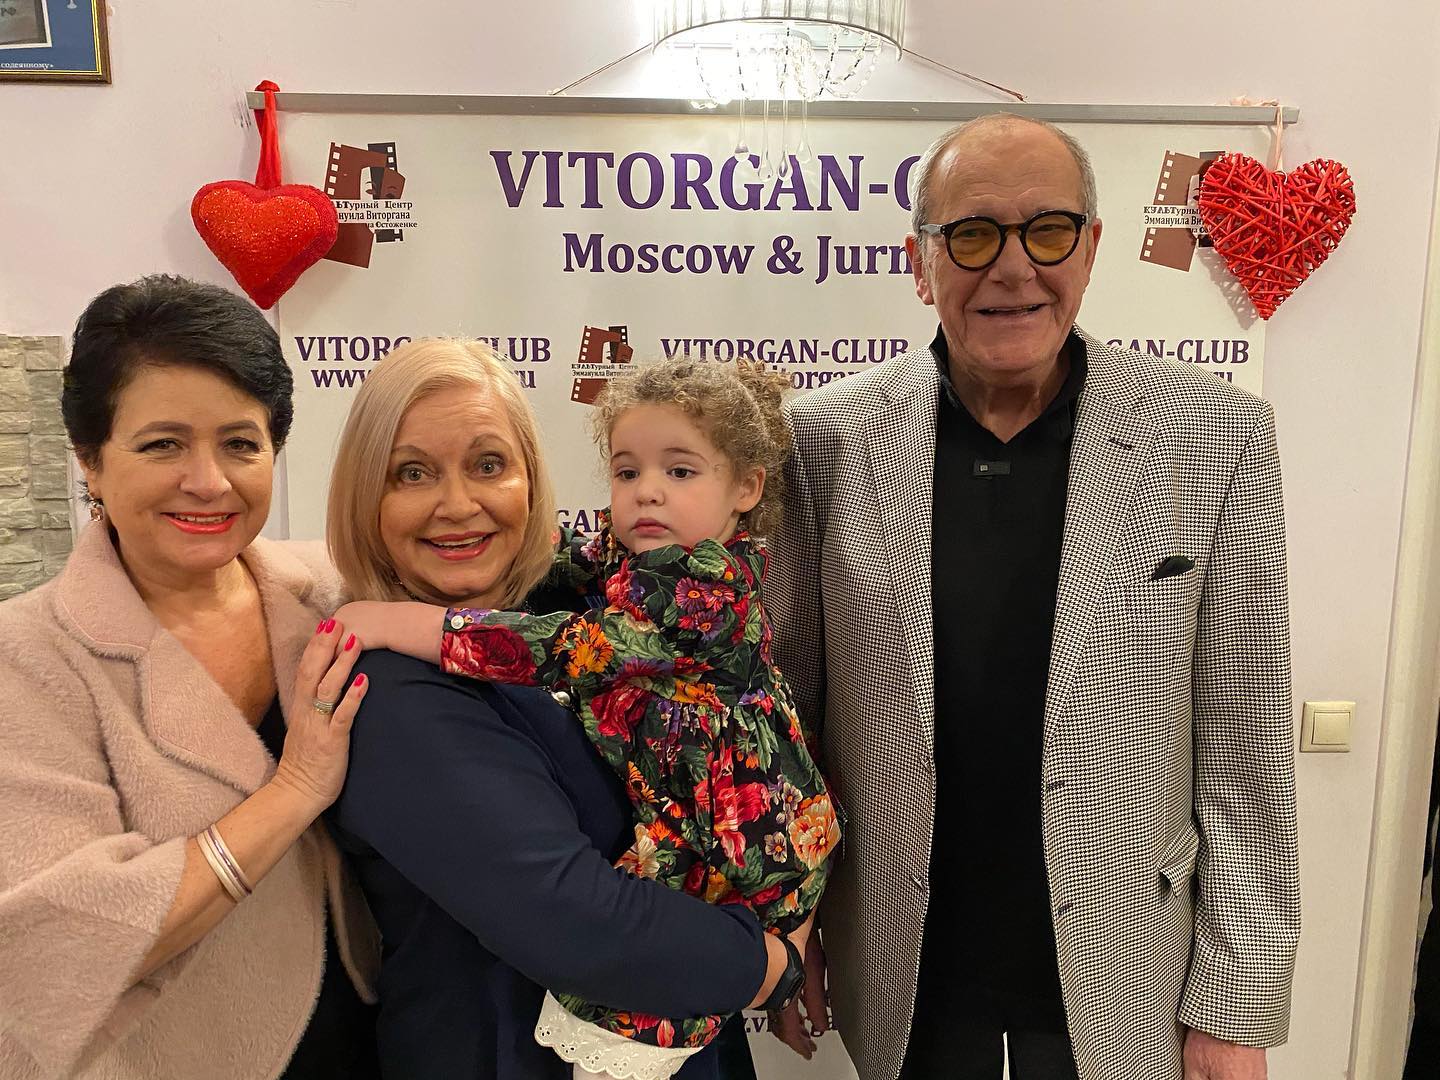        Лариса Преториус и семья Виторганов